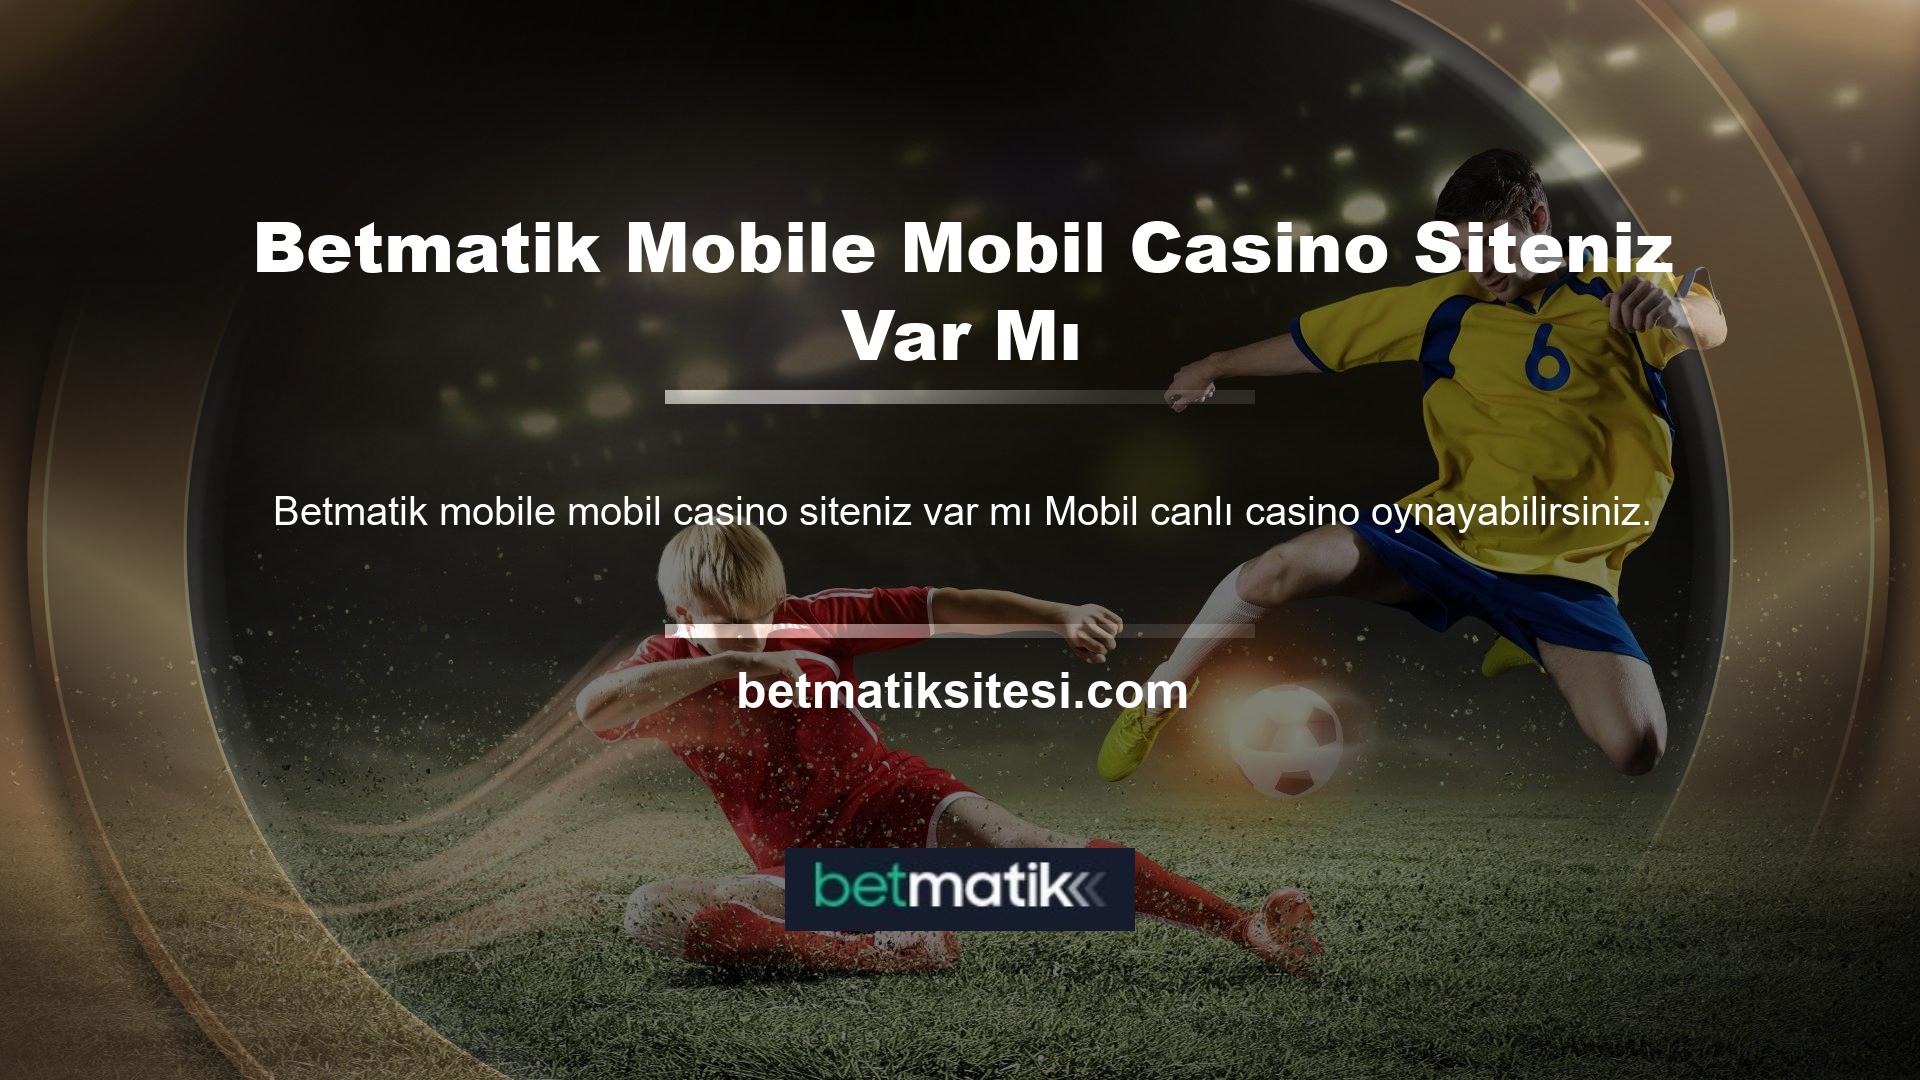 Android Betmatik mobil casino sitesi var mı? Cihazınızda canlı casinolar ve IOS cihazınızda canlı casinolar gibi özelliklere erişebildiğinizi göreceksiniz